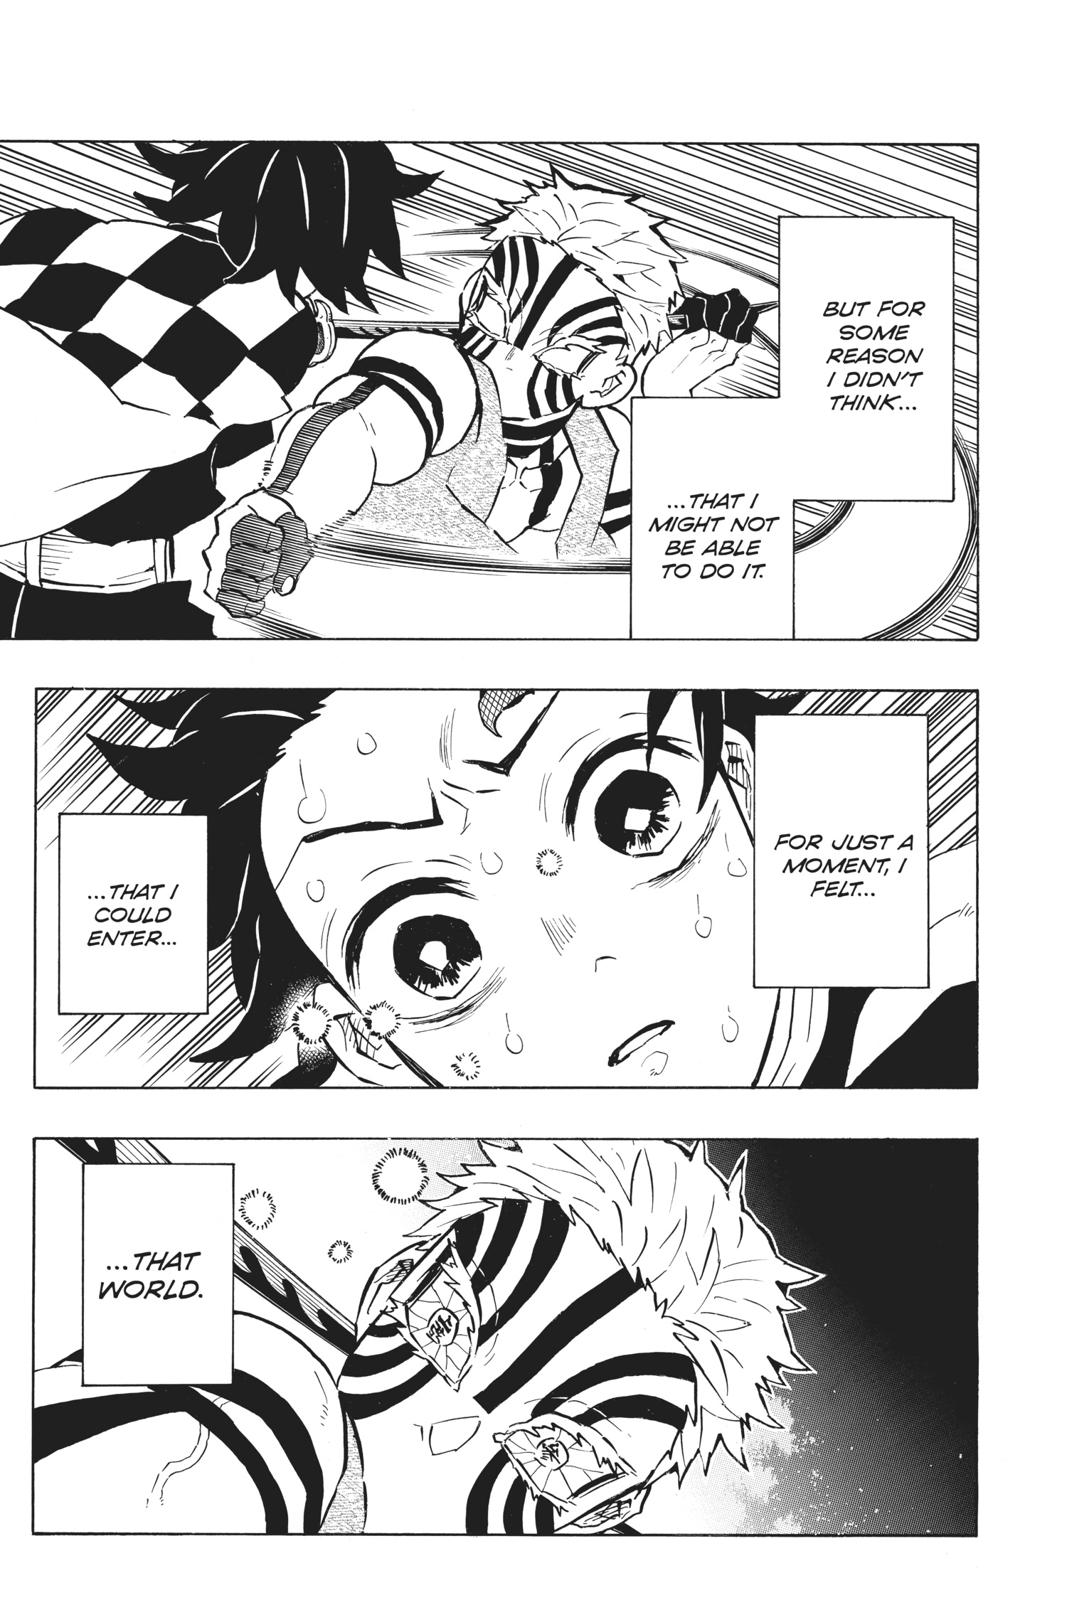 Demon Slayer Manga Manga Chapter - 151 - image 11